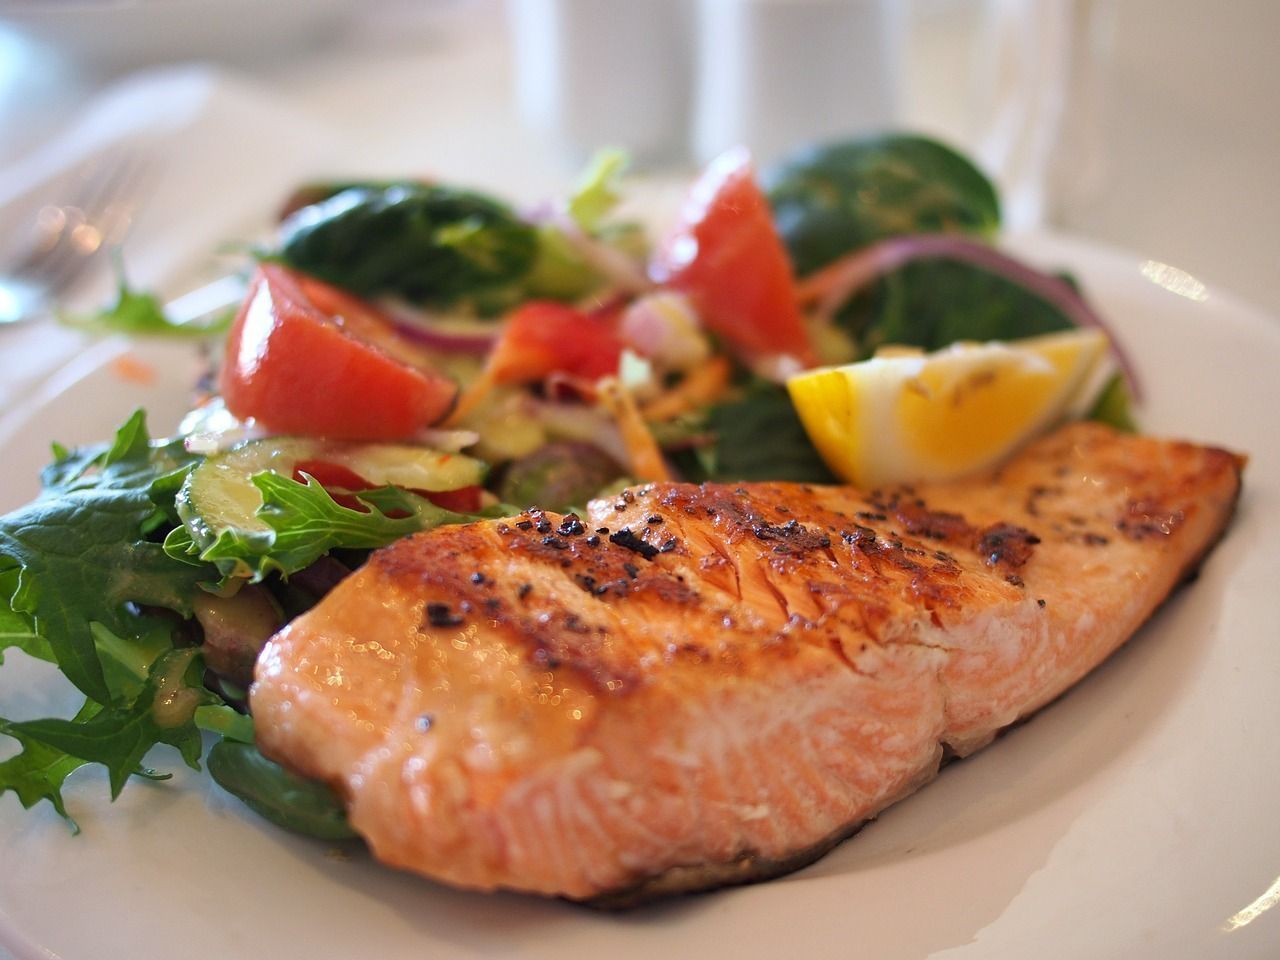 Fisch und Gemüse kommen bei der South Beach-Diät bevorzugt auf den Teller – das hilft beim Abnehmen.